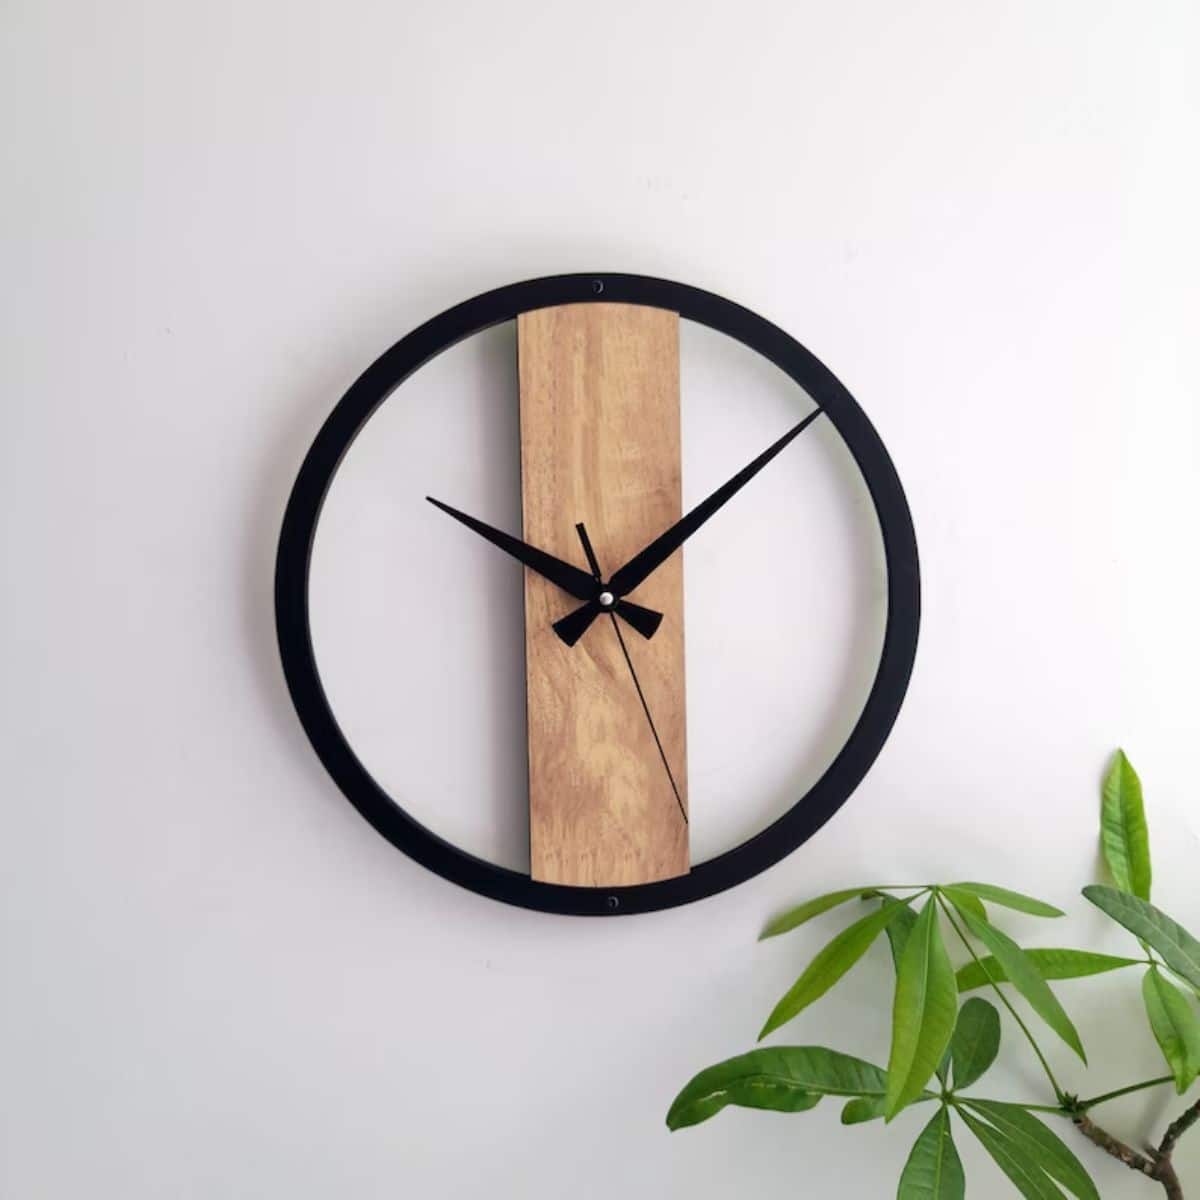 Minimalist Art Clock